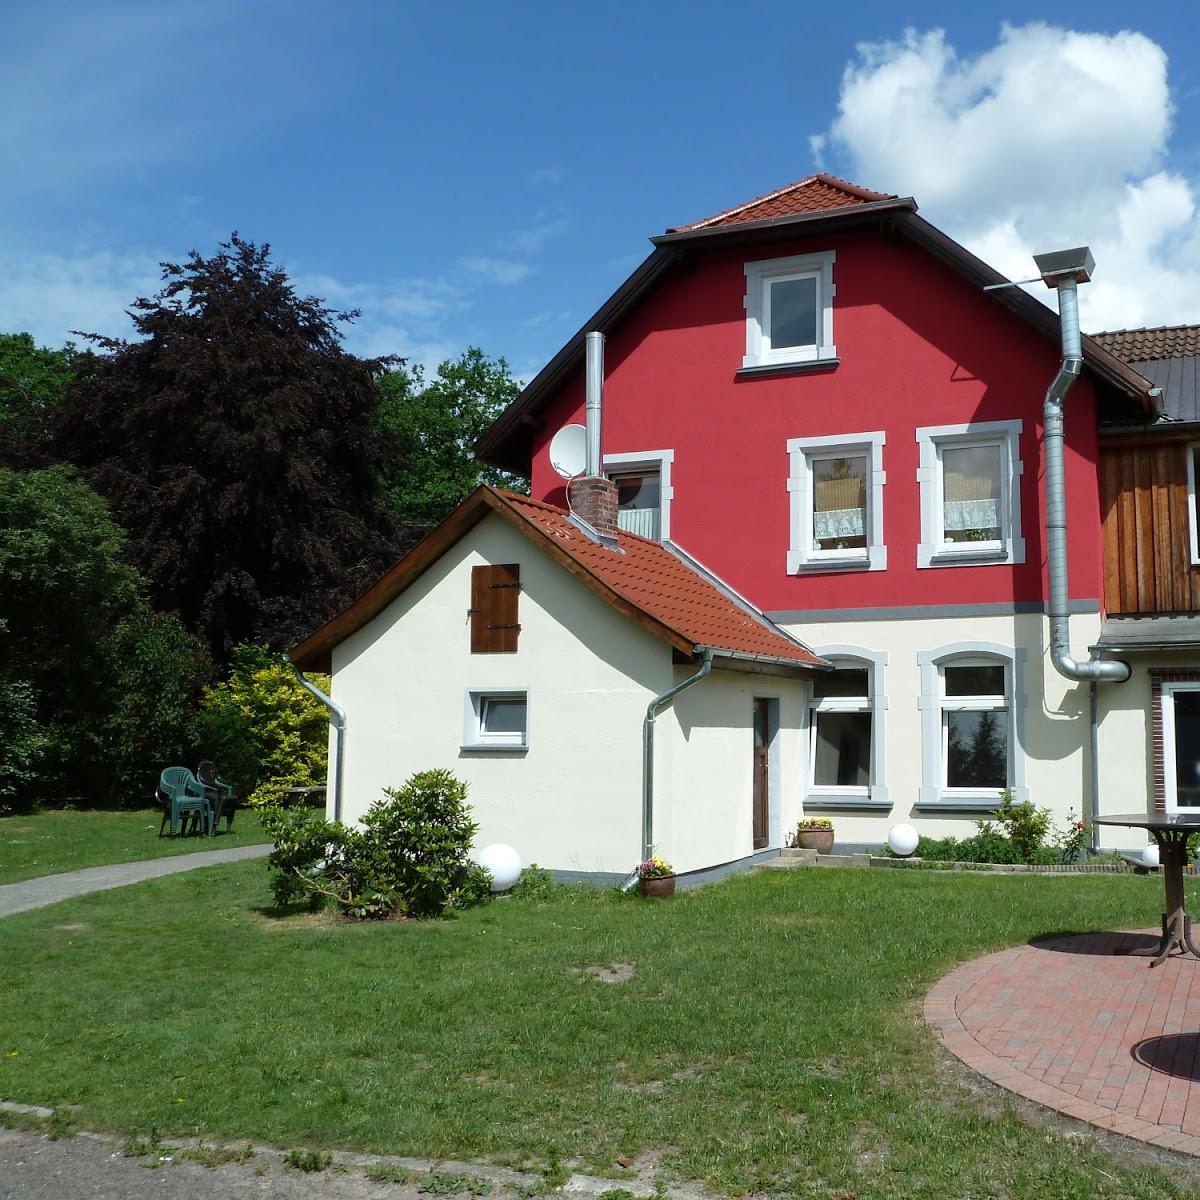 Restaurant "Zur Post Gasthaus" in  Eschede